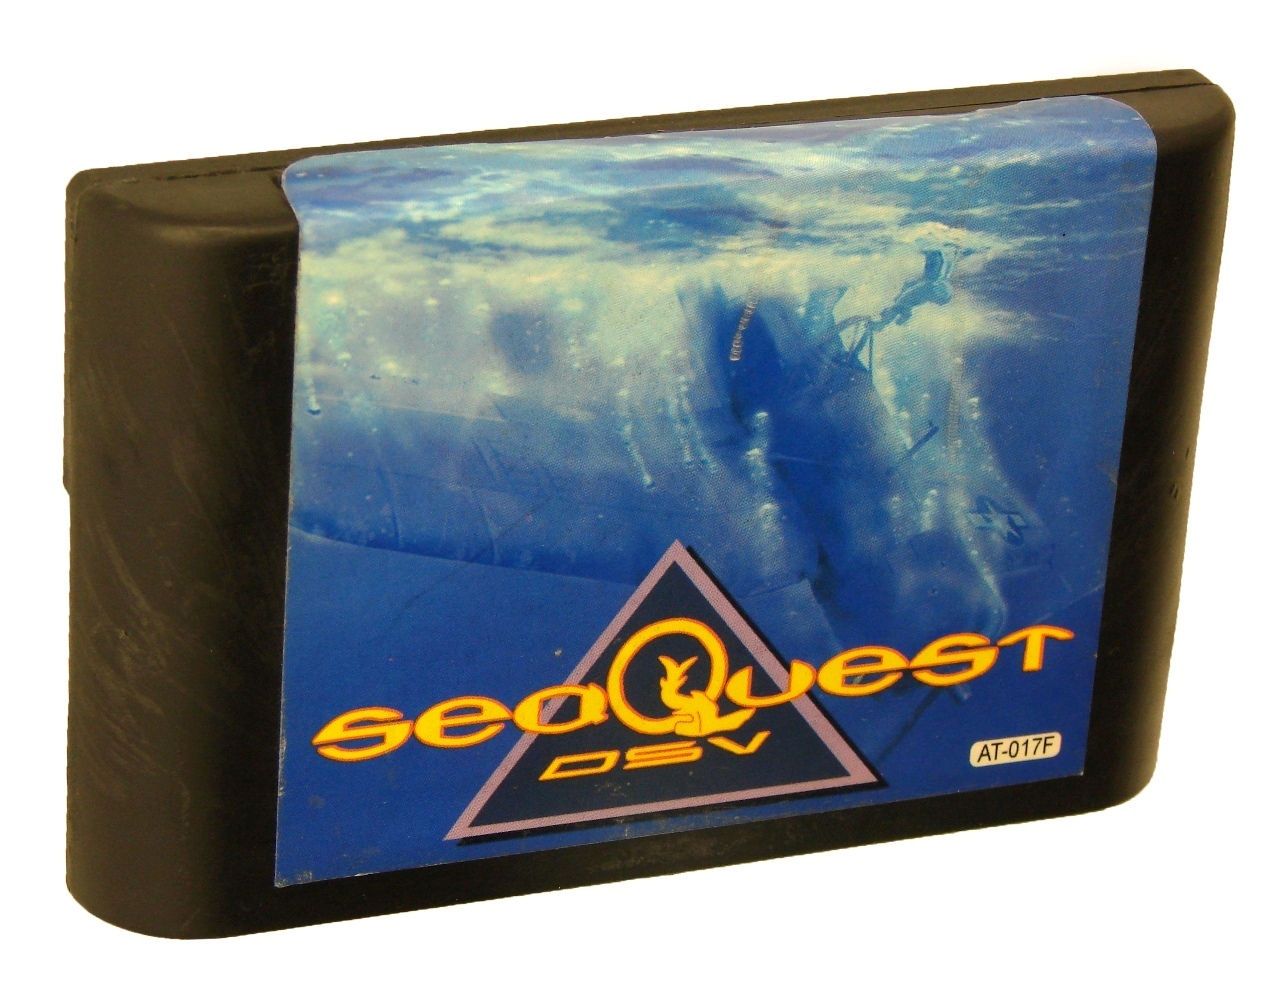   Sega SeaQuest (Sega)